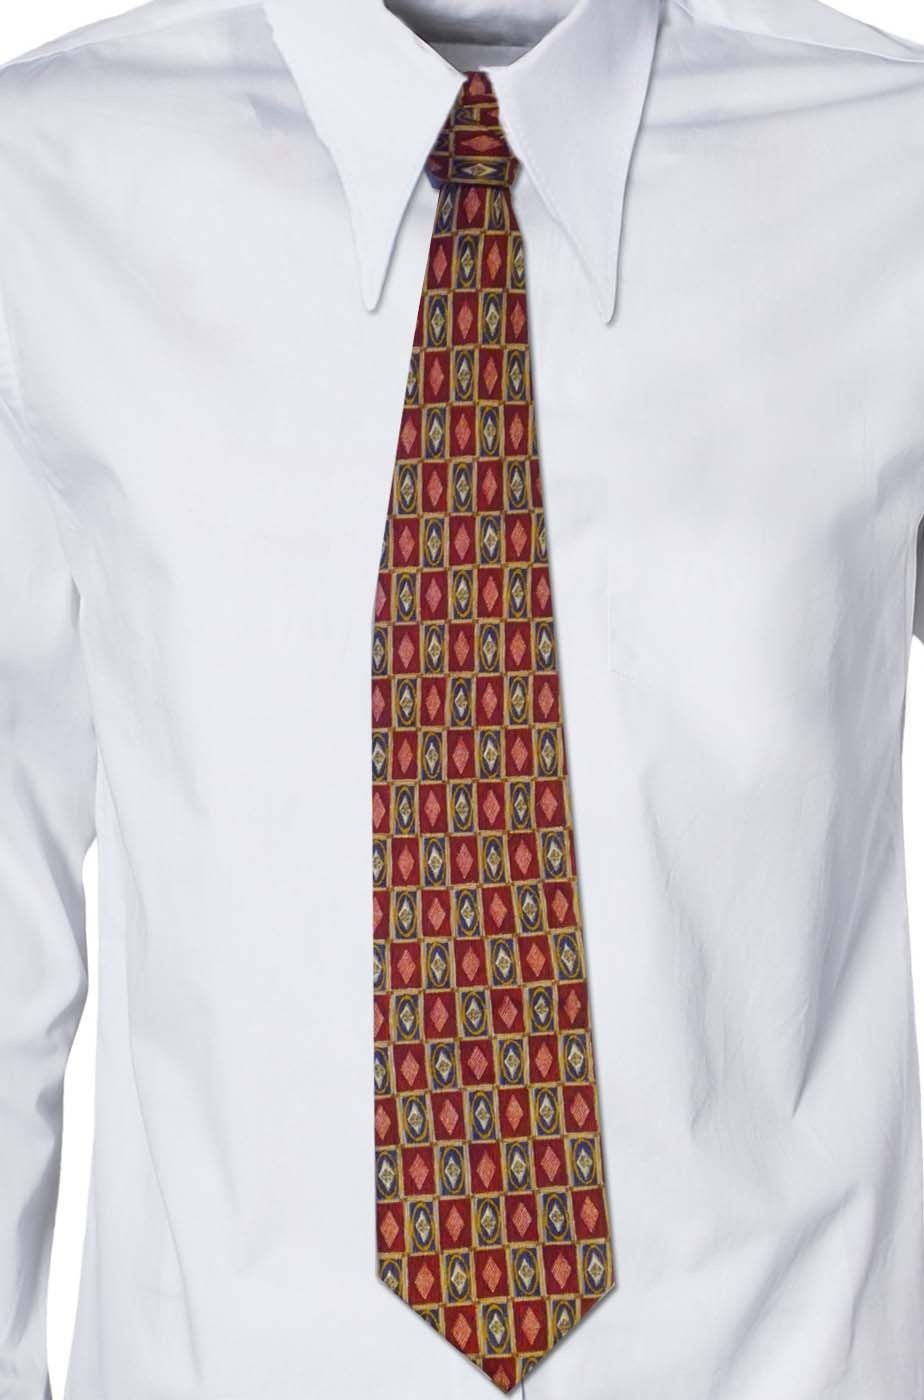 Cravatta rossa bordeaux a quadretti anni 70 vintage